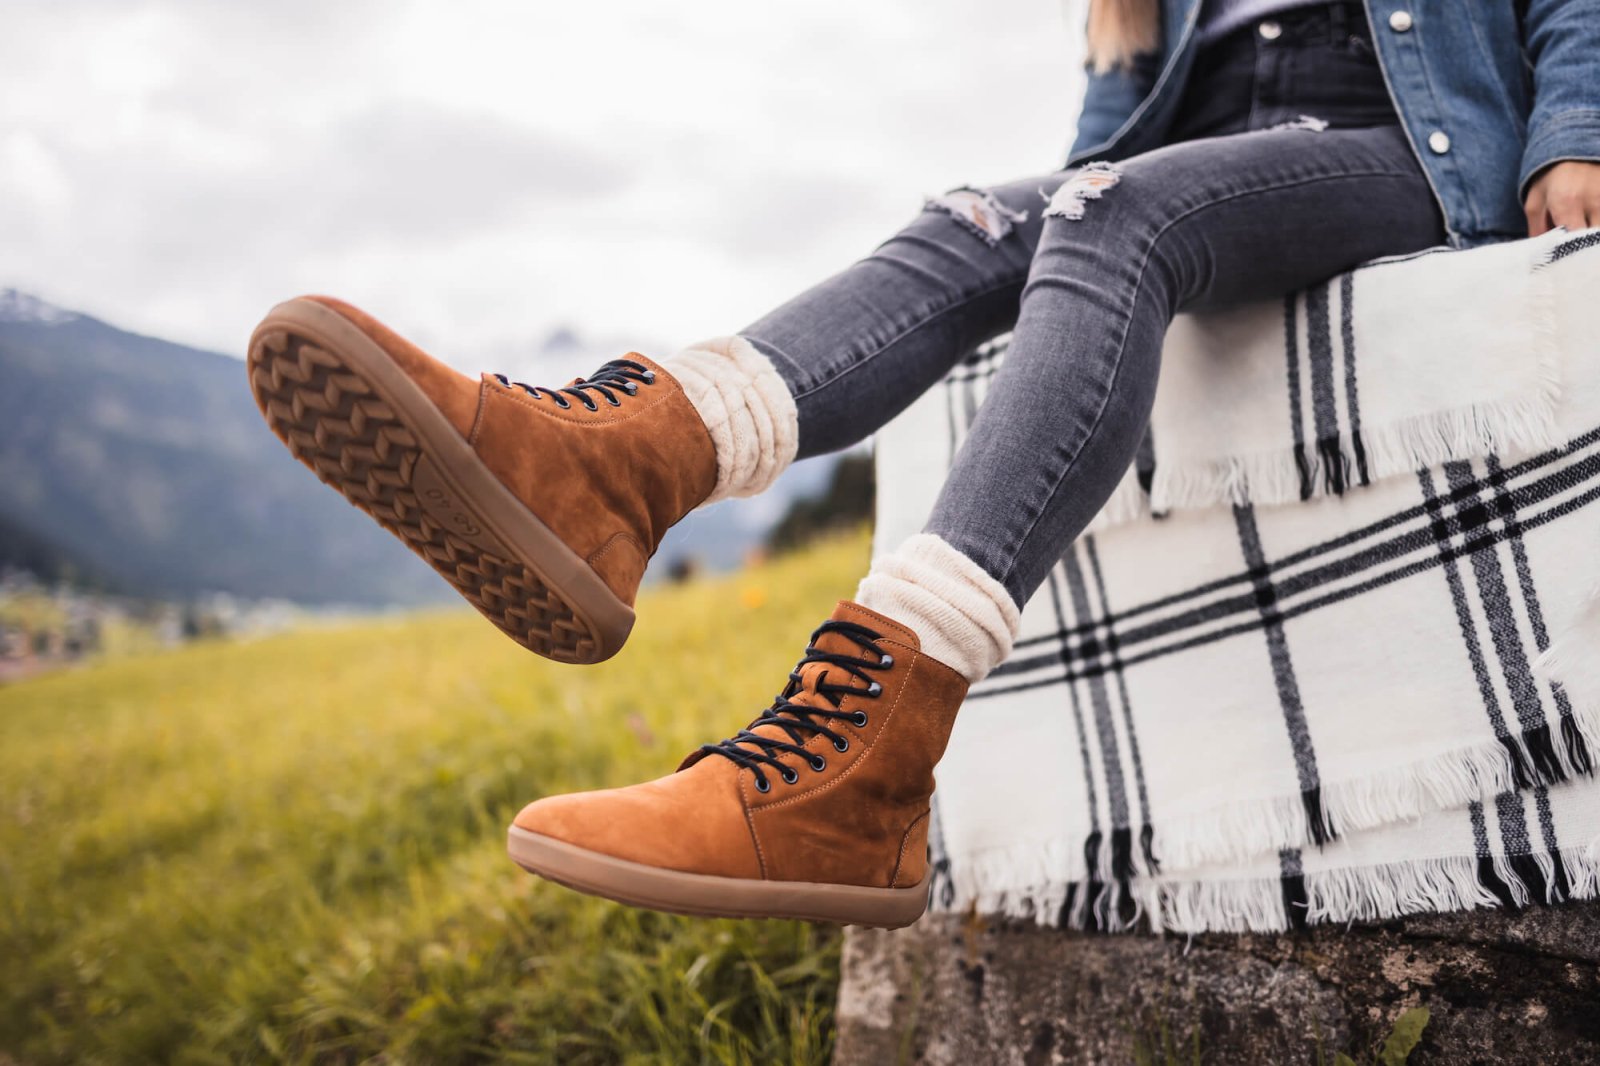 Calzado Barefoot - Diferencia entre un zapato convencional y uno